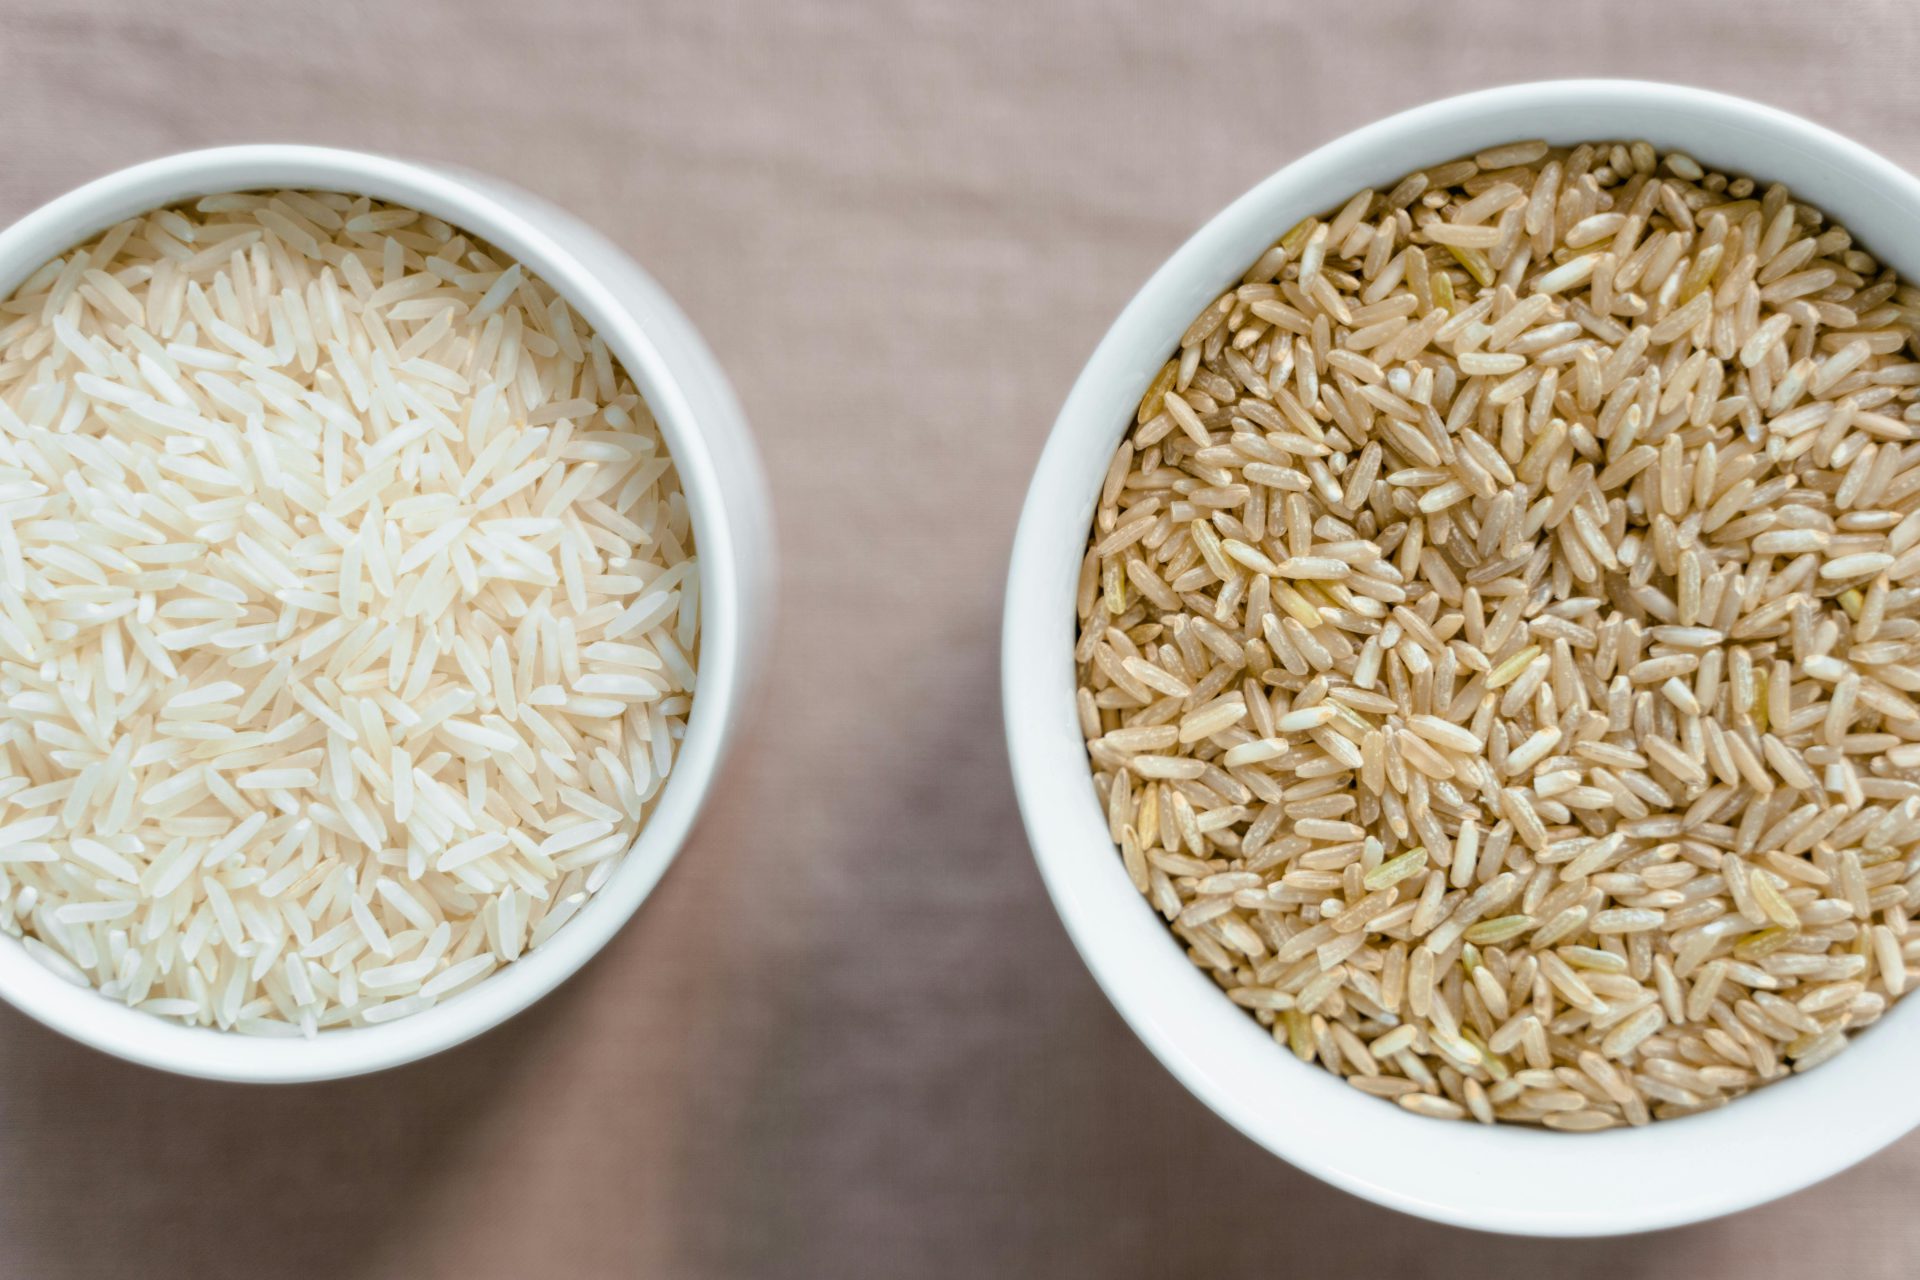  Arten von Reis: Arborio, Basmati und Jasmin